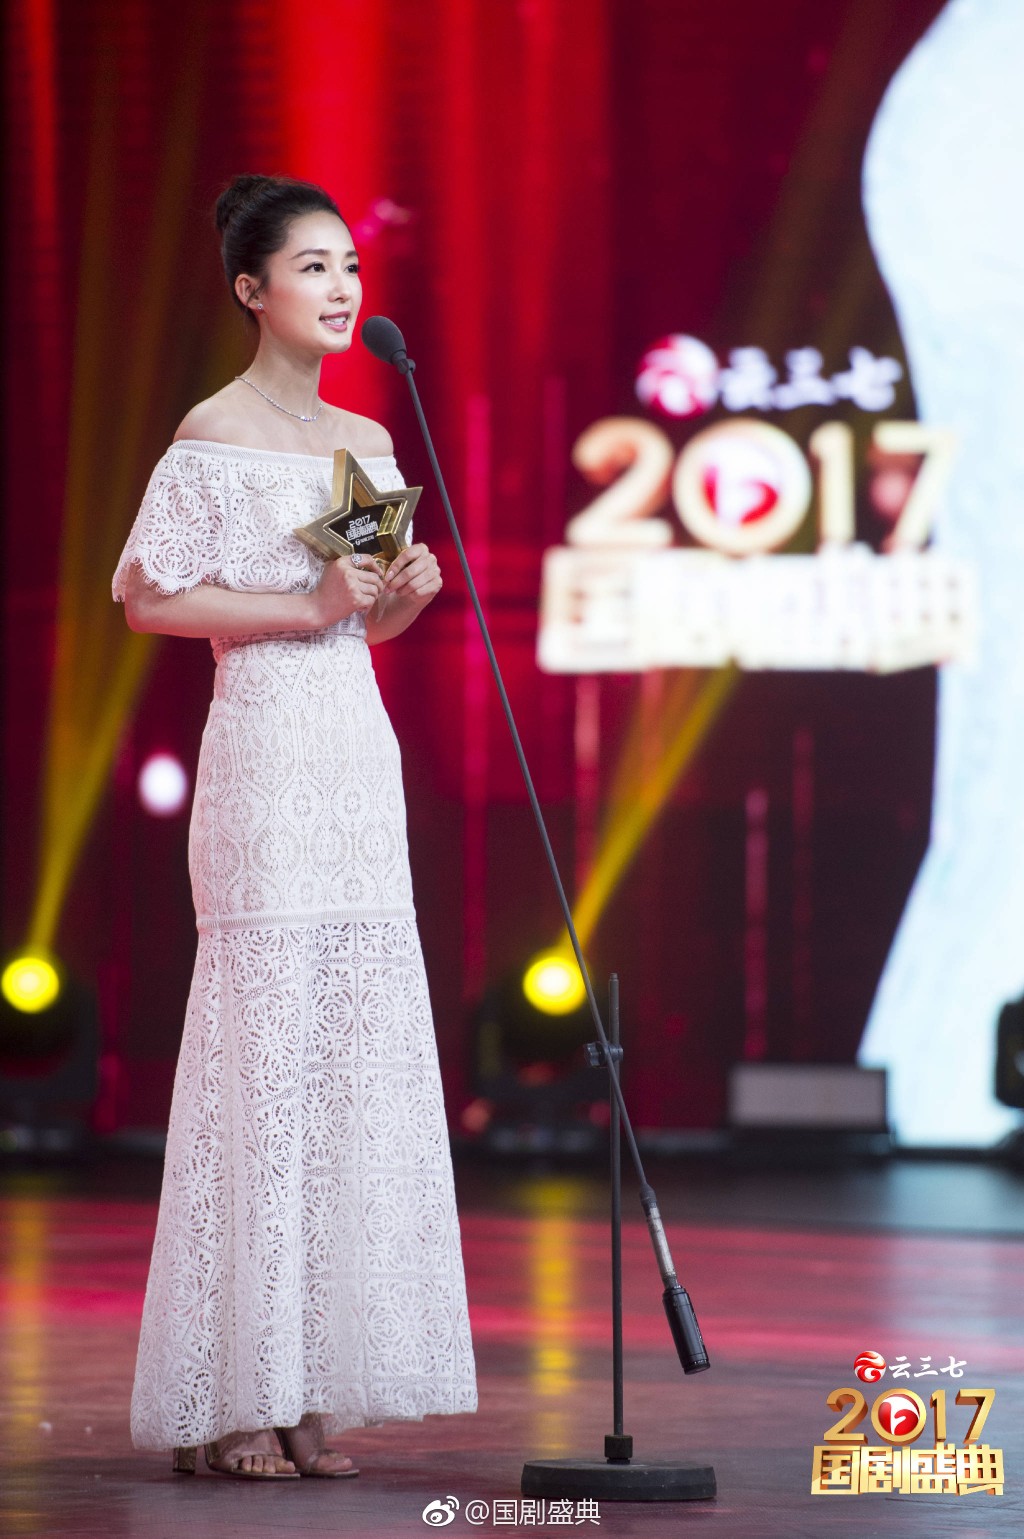 李沁2017安徽卫视国剧盛典,荣获"青春演绎偶像"奖项